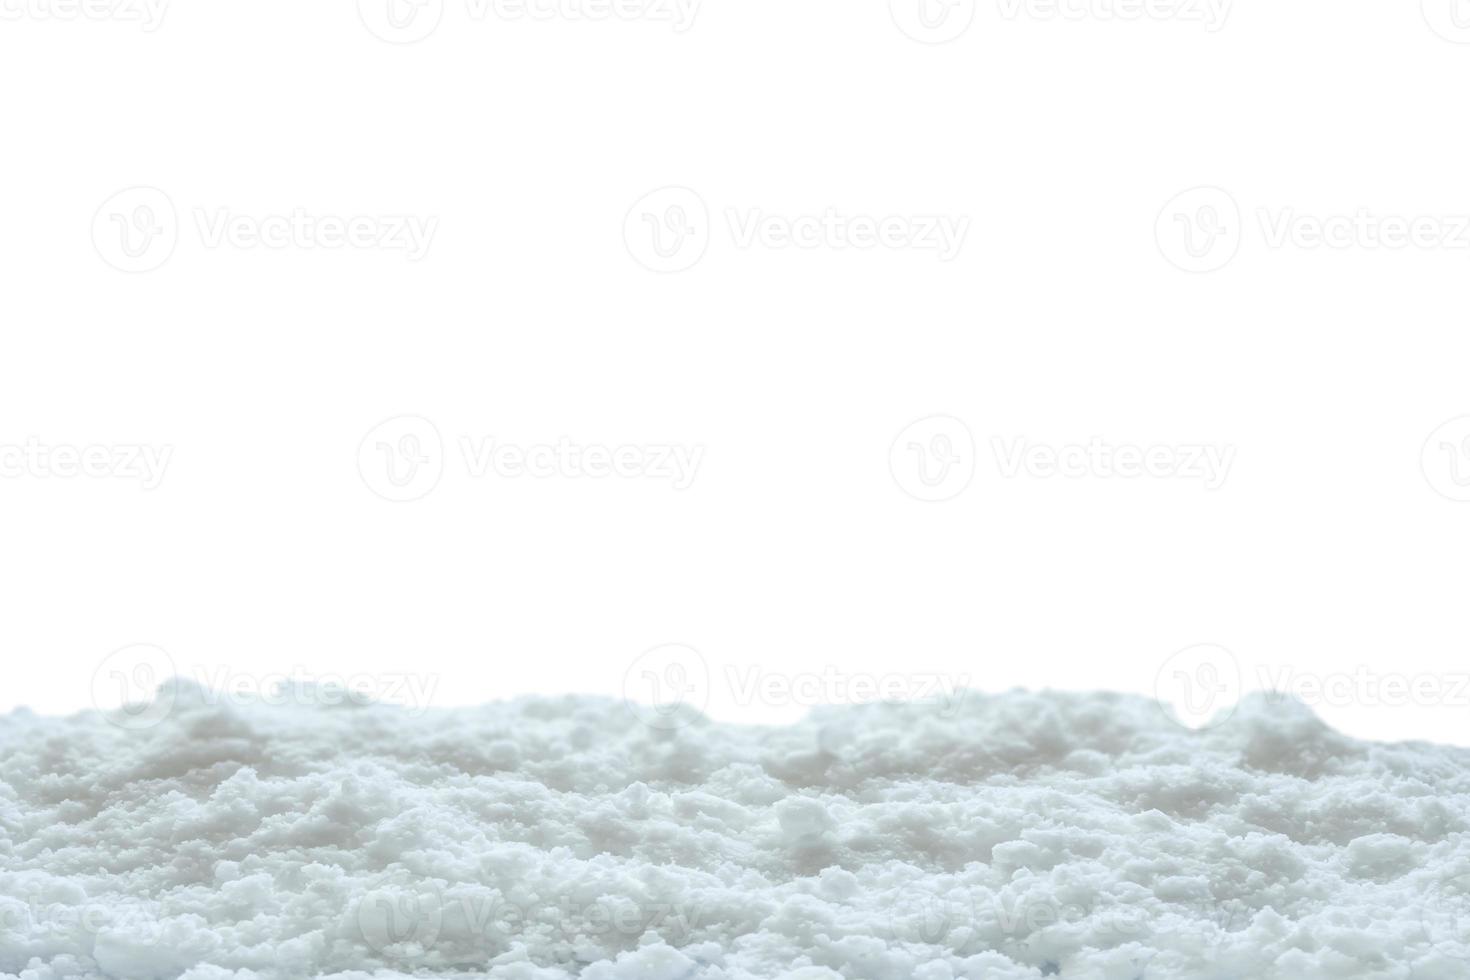 Schnee isoliert auf weißem Hintergrund hautnah foto